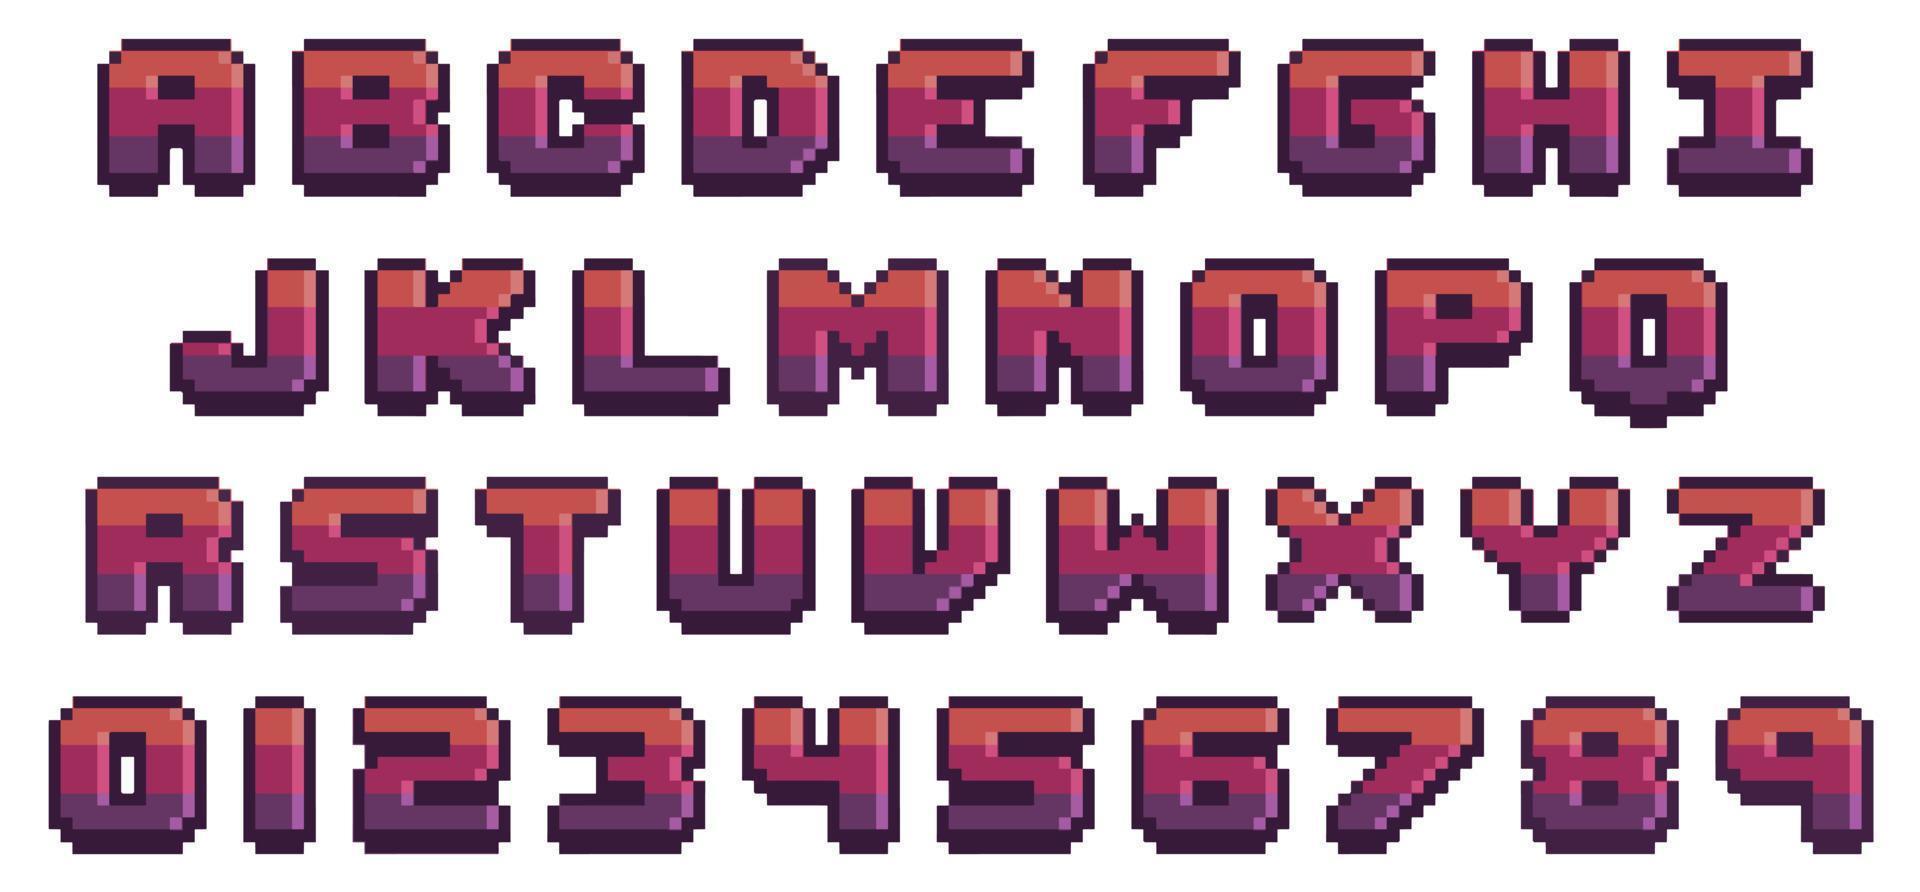 police de jeu en pixel art. Lettres et chiffres de style 8 bits. alphabet de vecteur en pixel